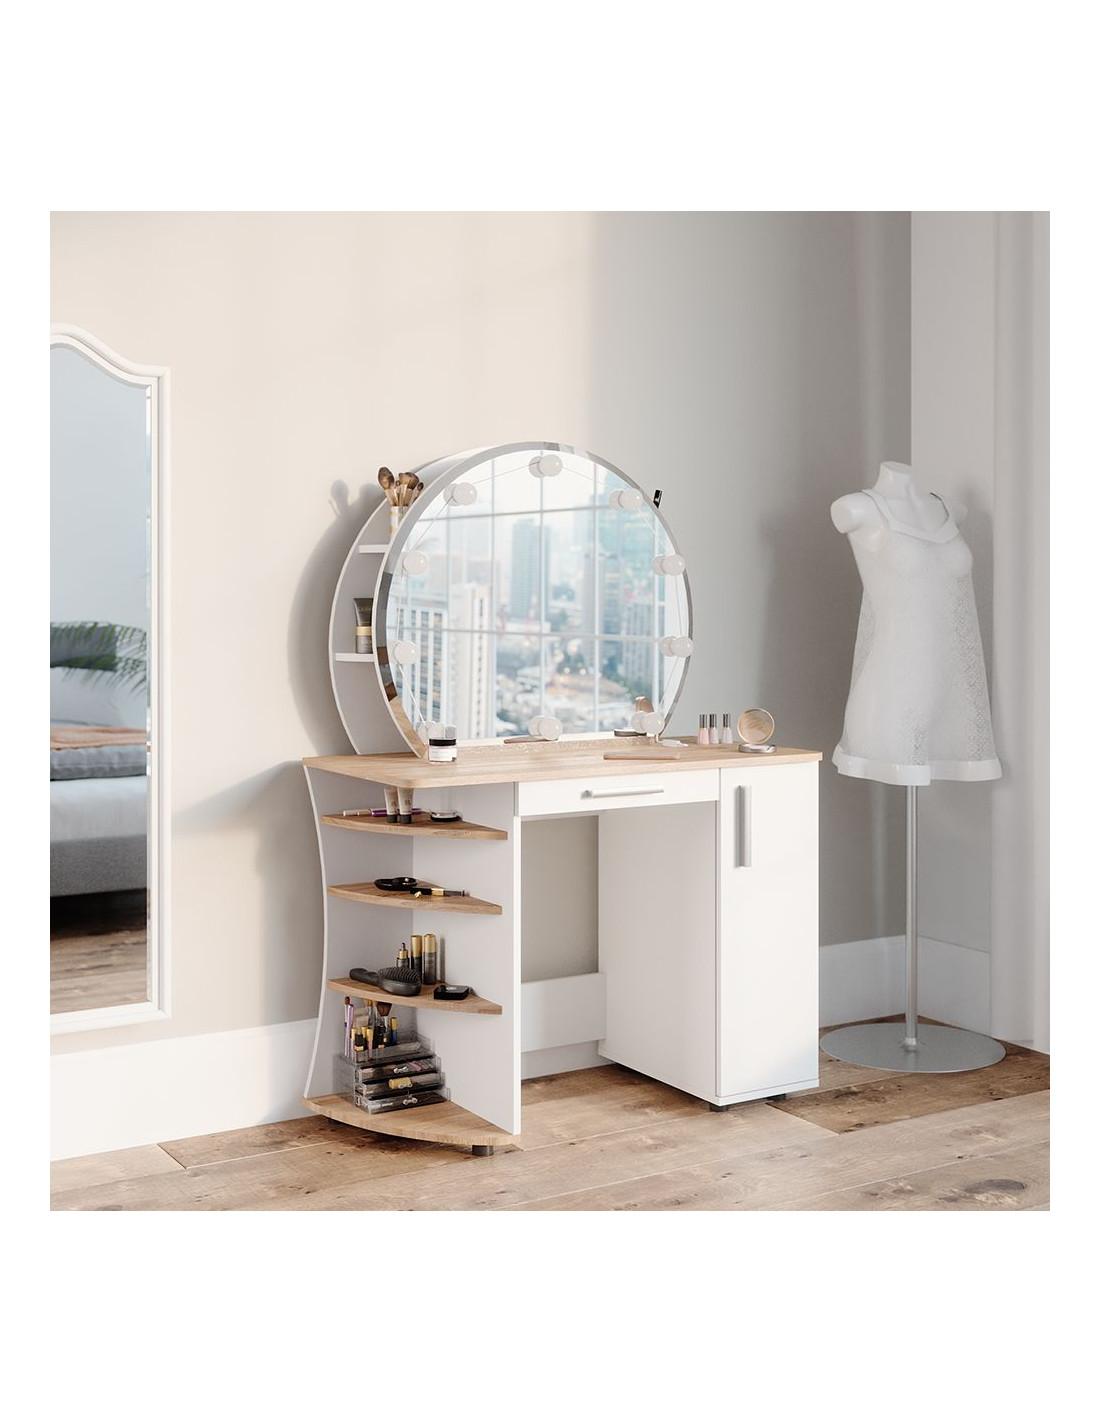 Coiffeuse épurée étagères et miroir LED + Tabouret blanc chêne - Ciel &  terre